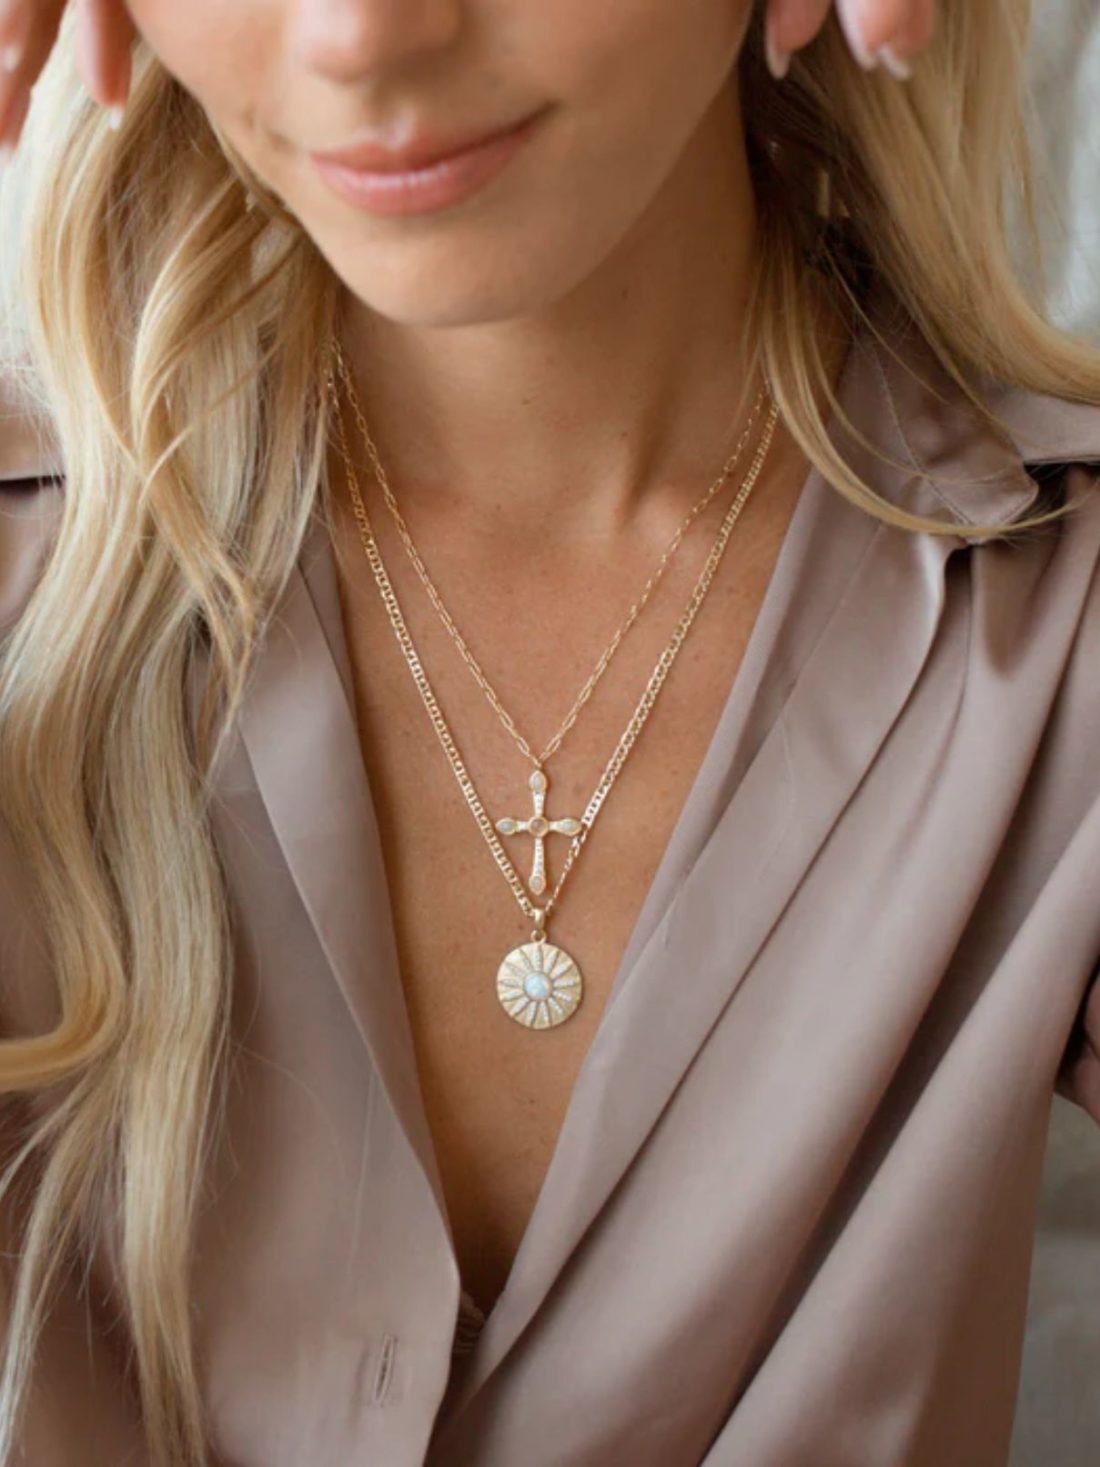 joy dravecky stargazer necklace in gold with opal stone